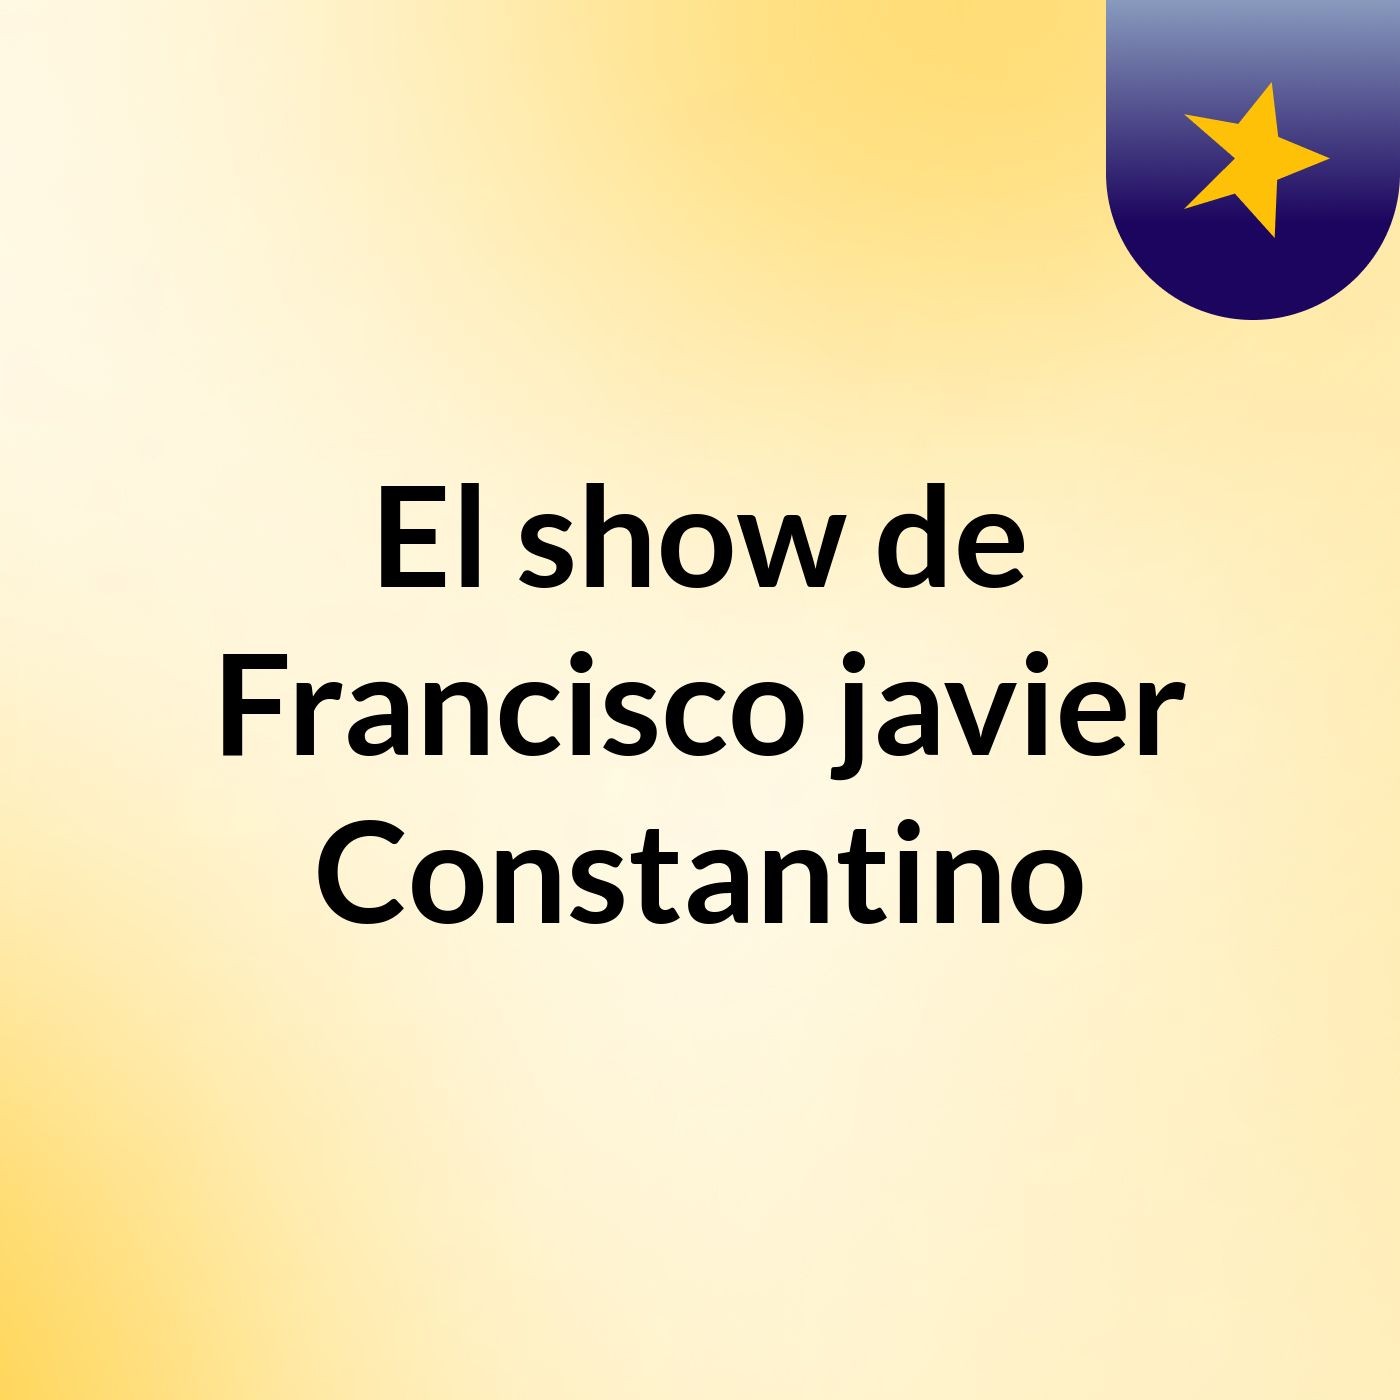 El show de Francisco javier Constantino 